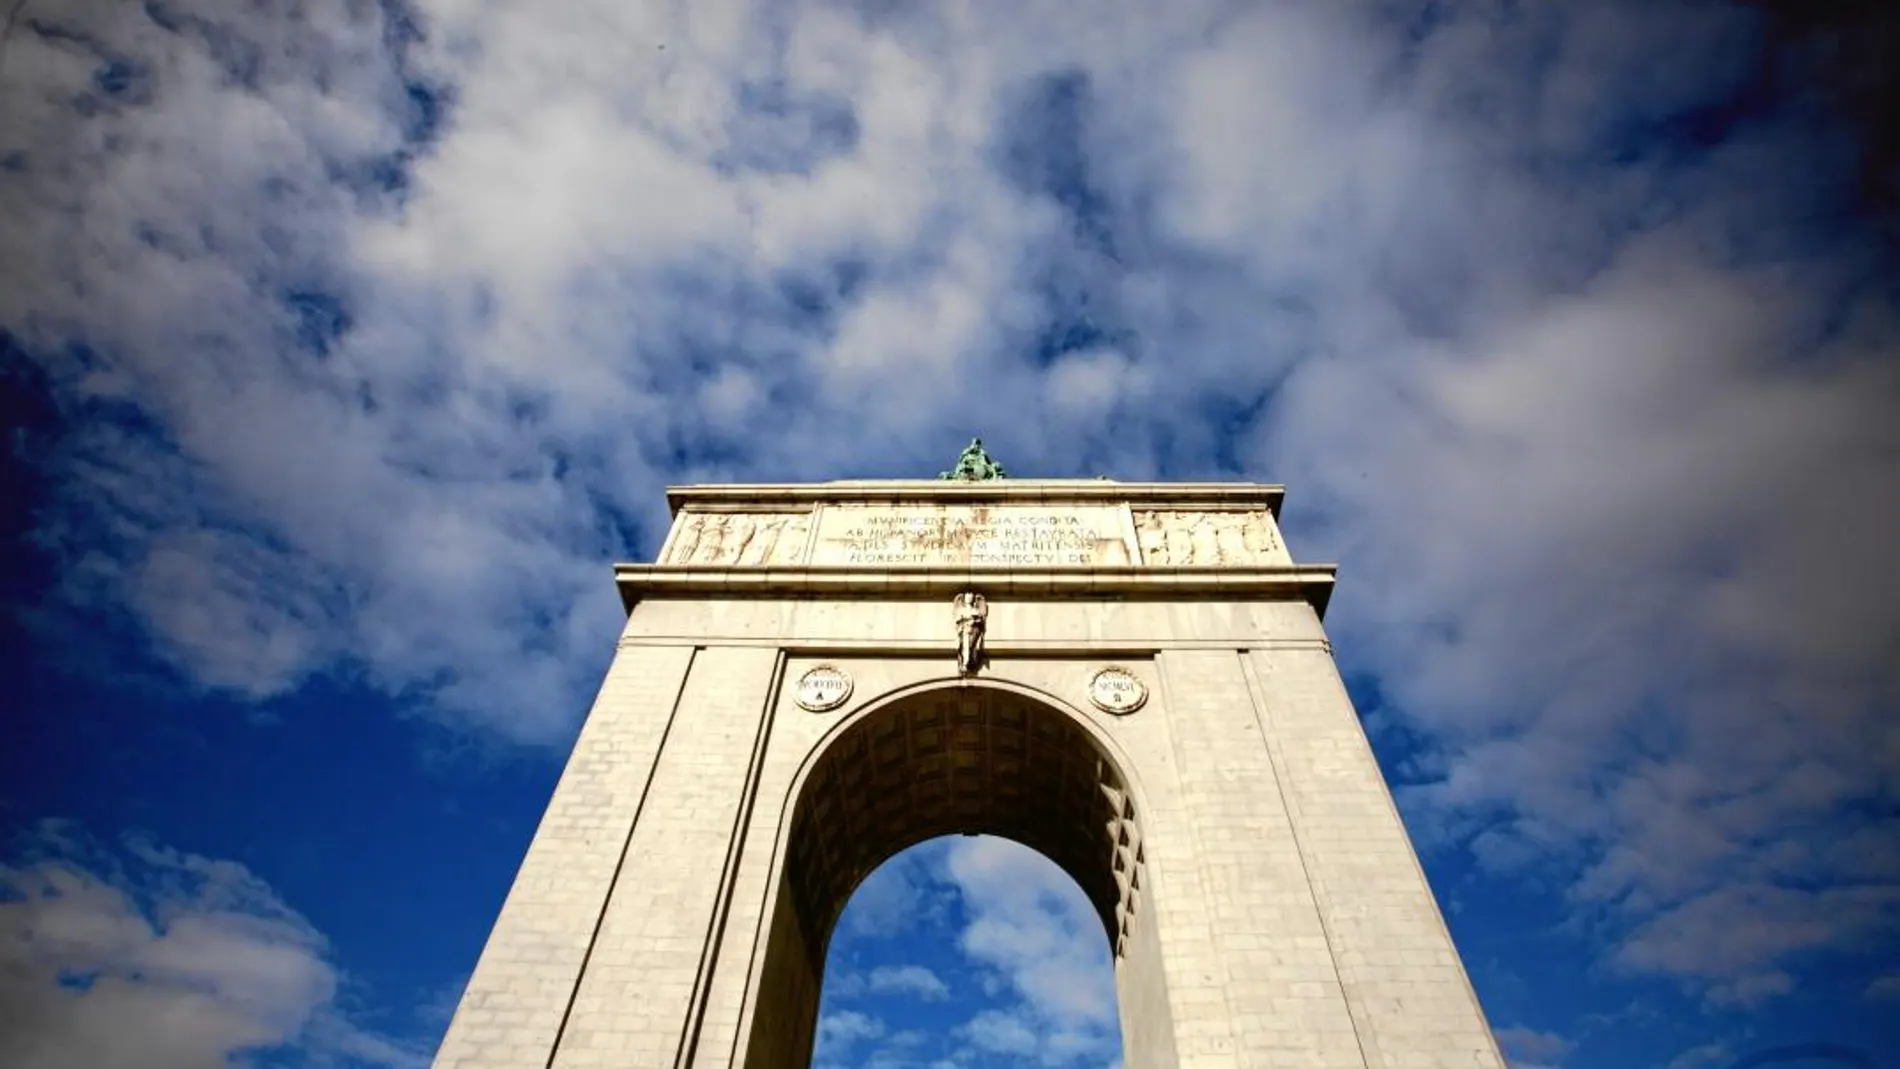 El monumento fue inaugurado el 18 de julio de 1956 como homenaje al triunfo de Franco en la guerra civil. Se eligió la ubicación de la Ciudad Universitaria en recuerdo a uno de los emplazamientos en los que se libró la batalla de Madrid